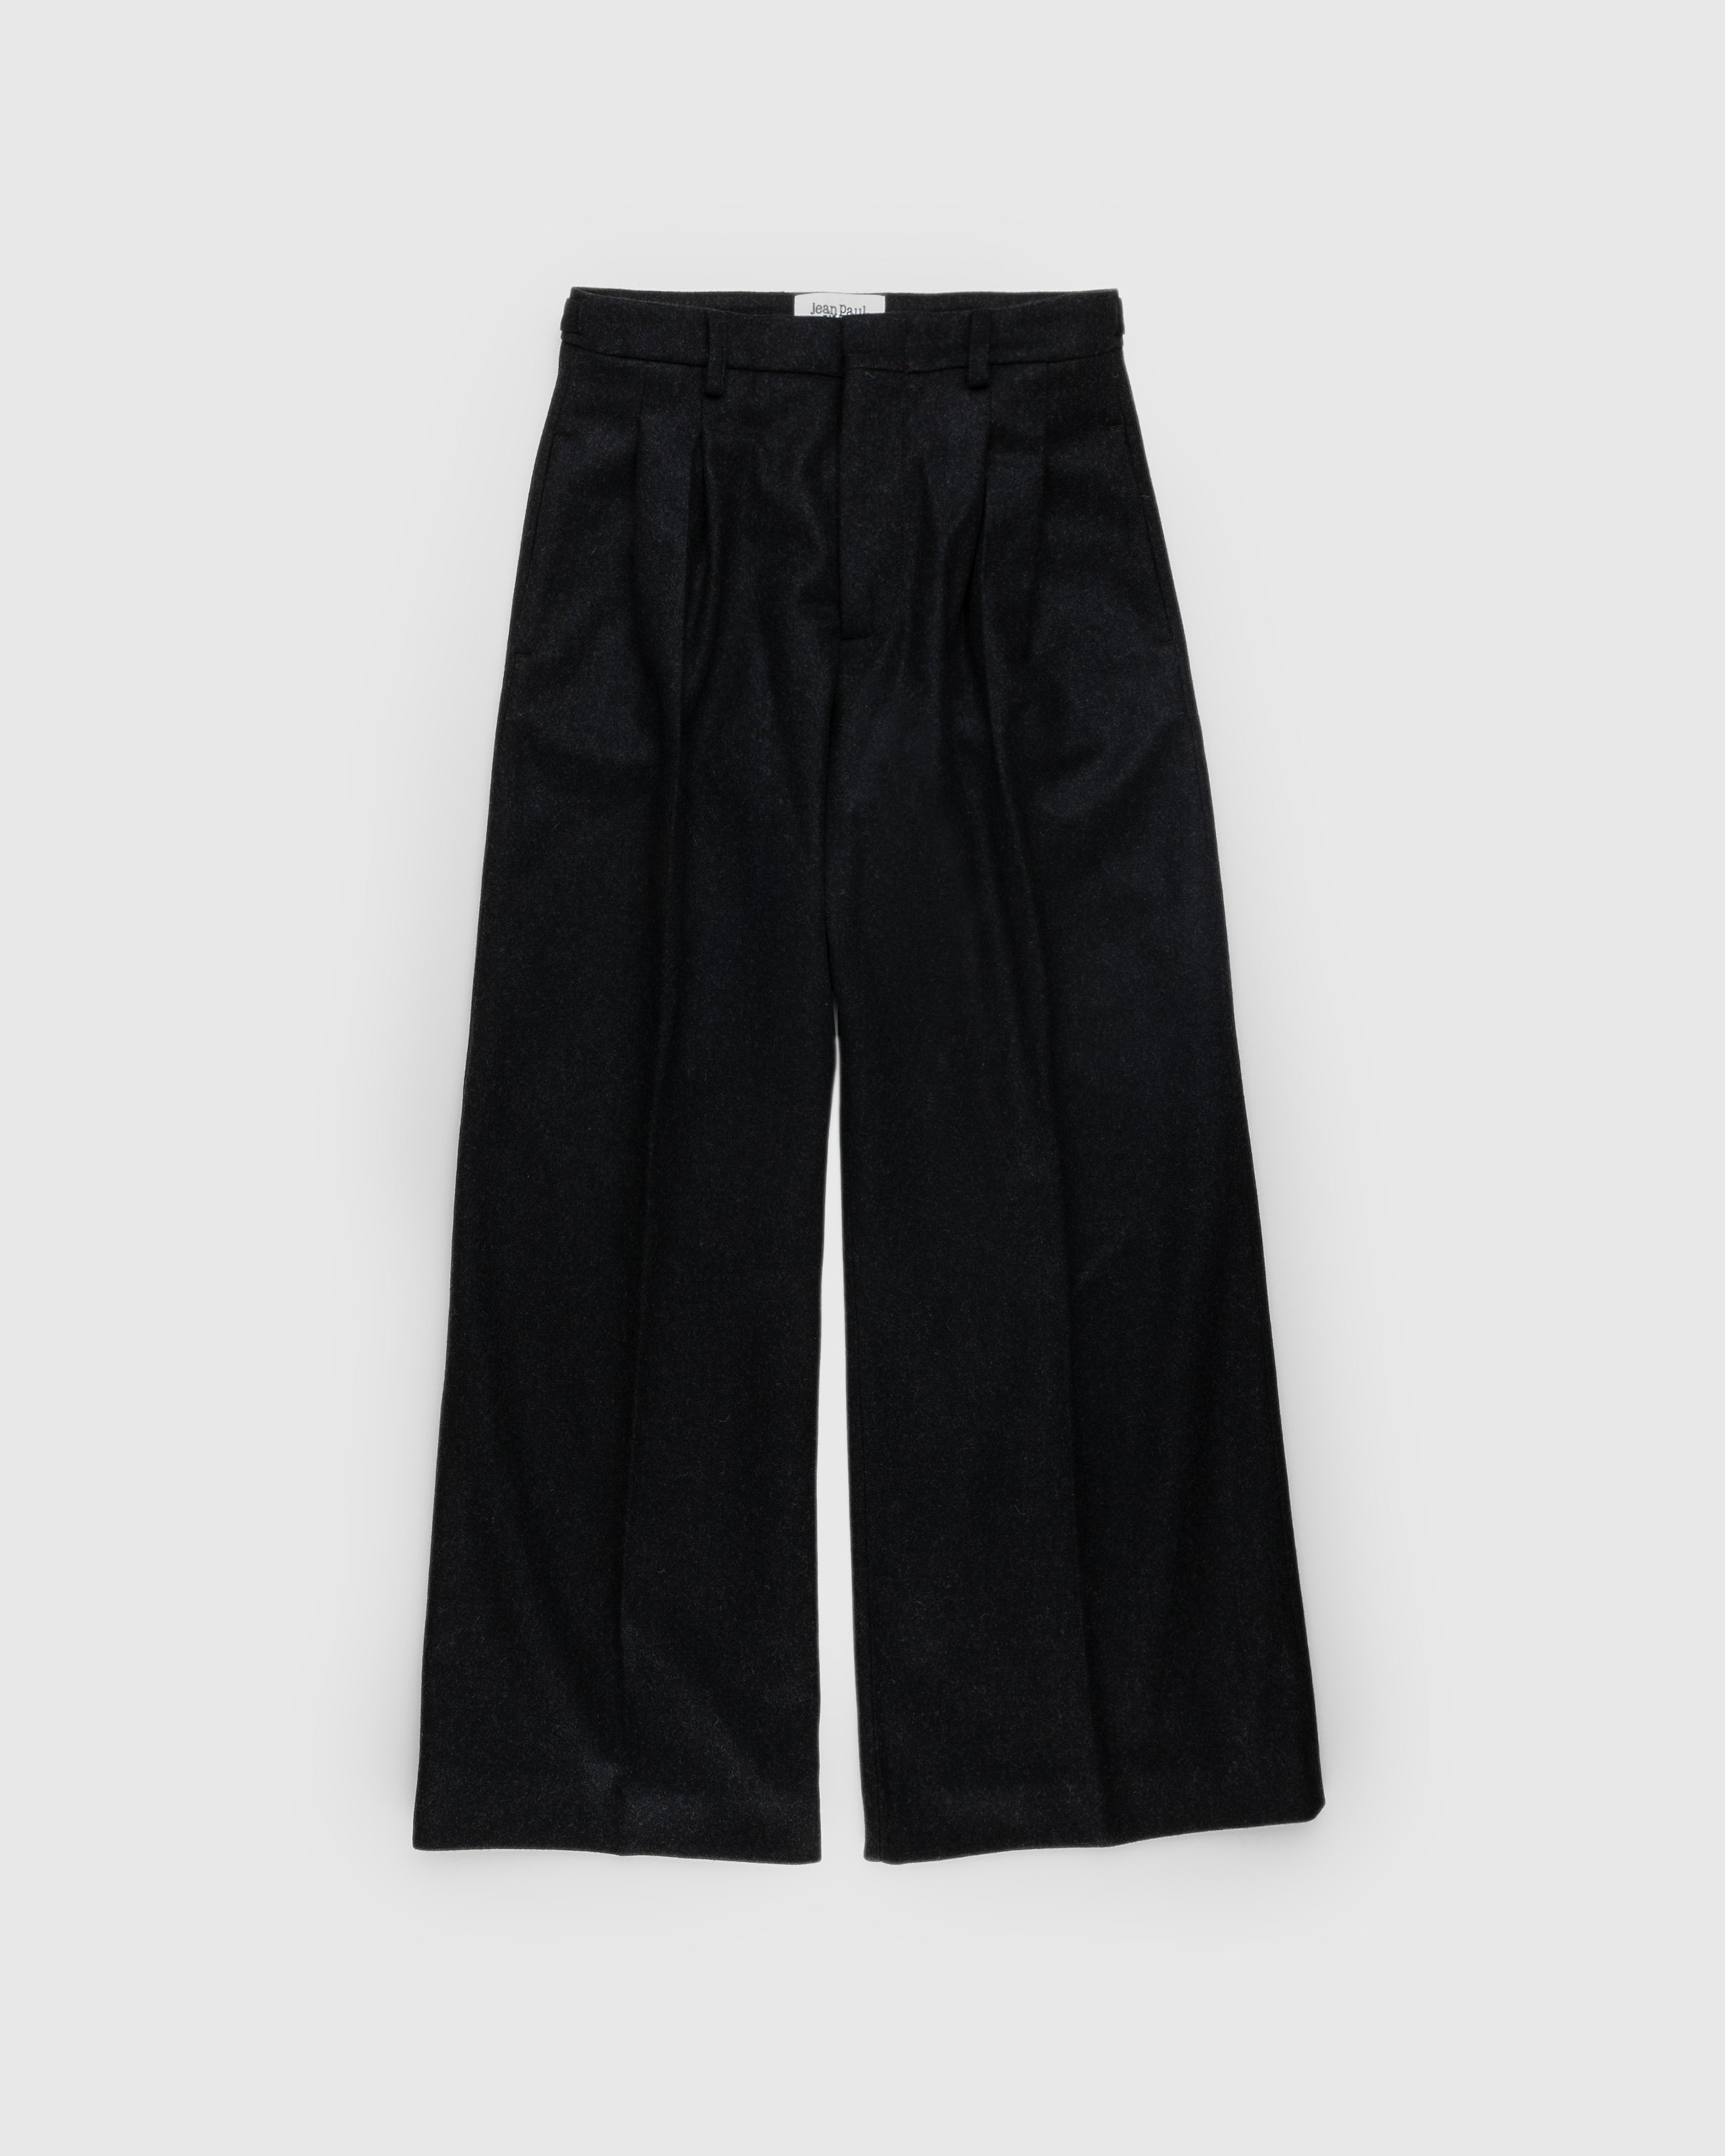 Jean Paul Gaultier - Felted Wool Suit Pants Dark Grey - Clothing - Grey - Image 1